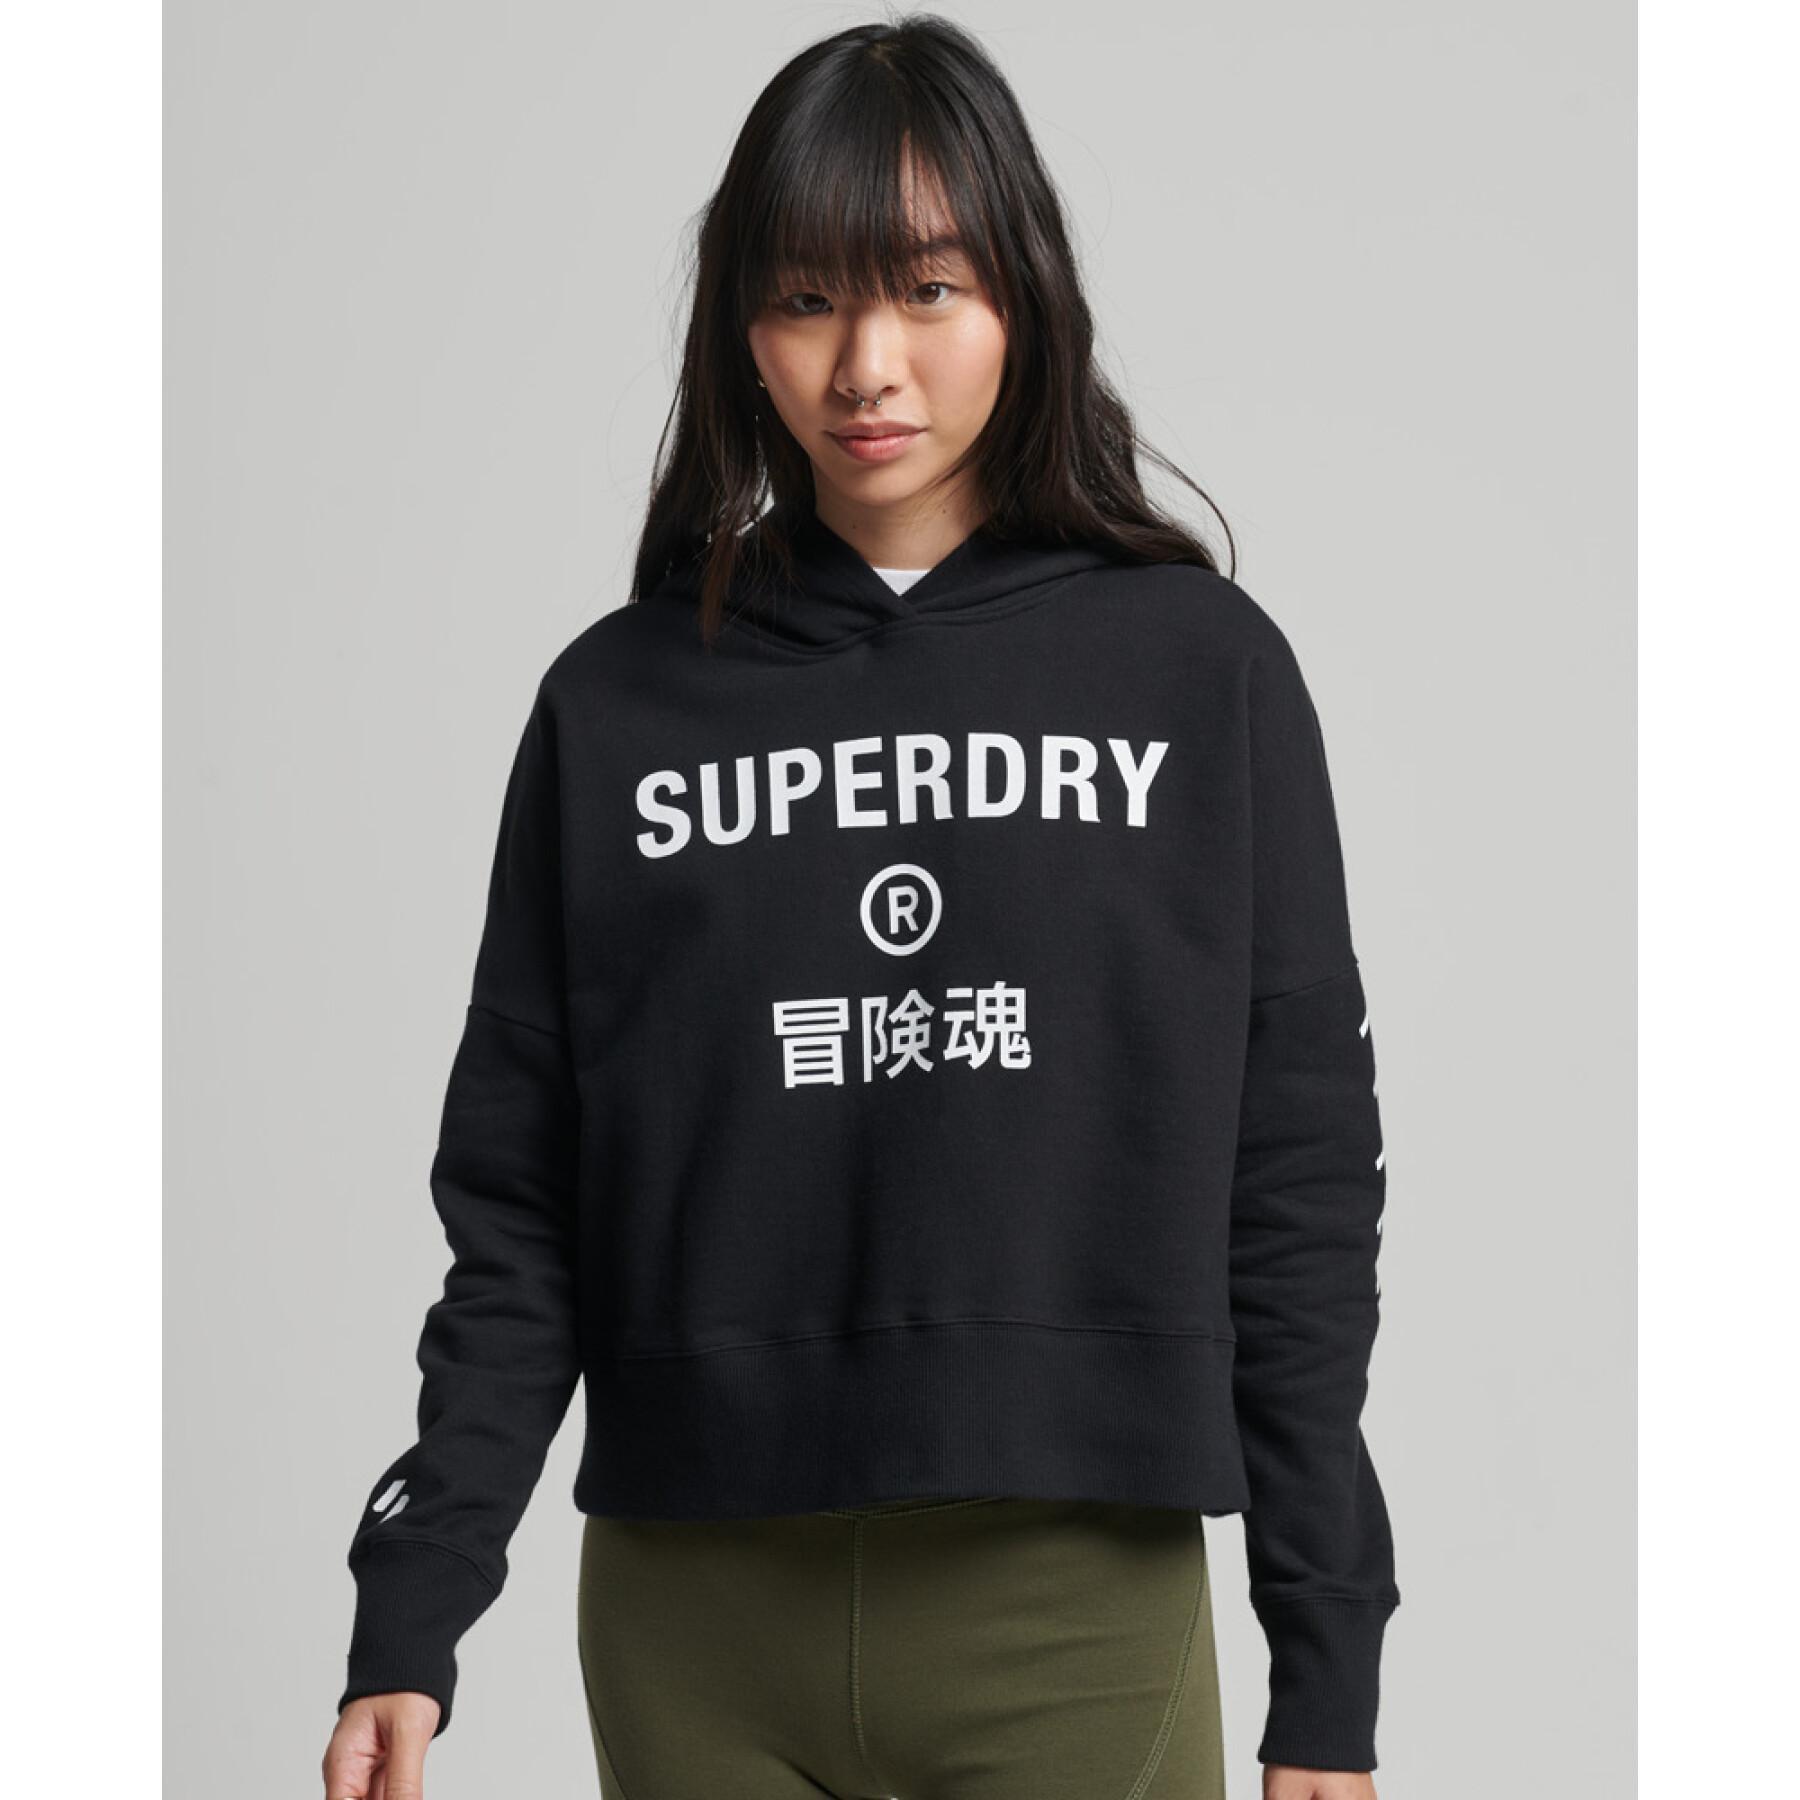 Dames sweatshirt met capuchon Superdry Core